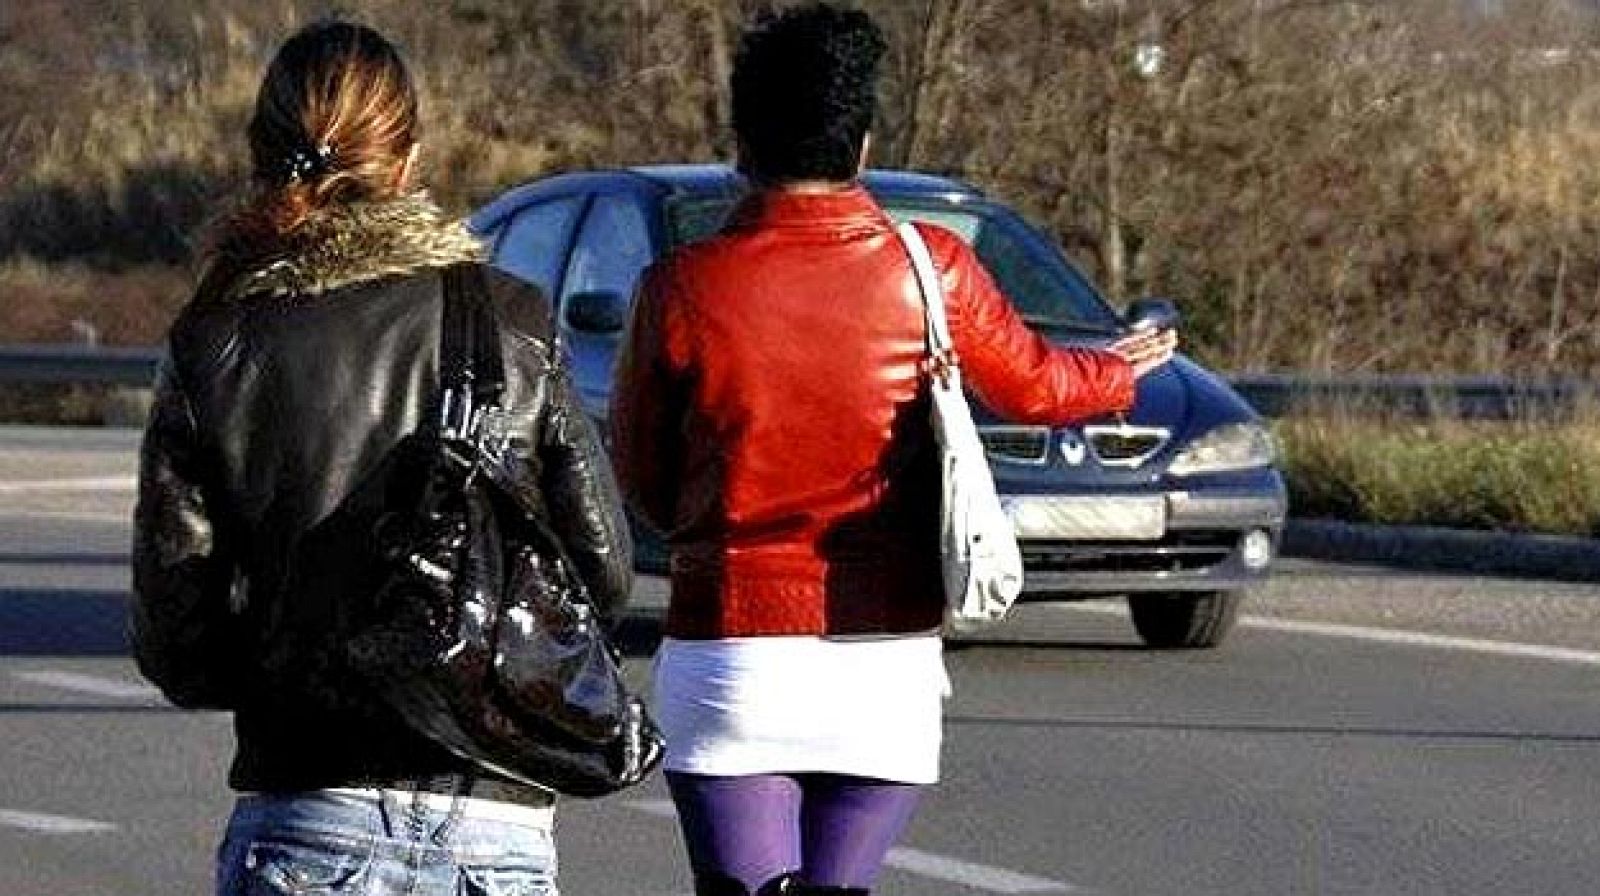 Numerosos ayuntamientos españoles multan a los clientes de las prostitutas y algunos a ellas.